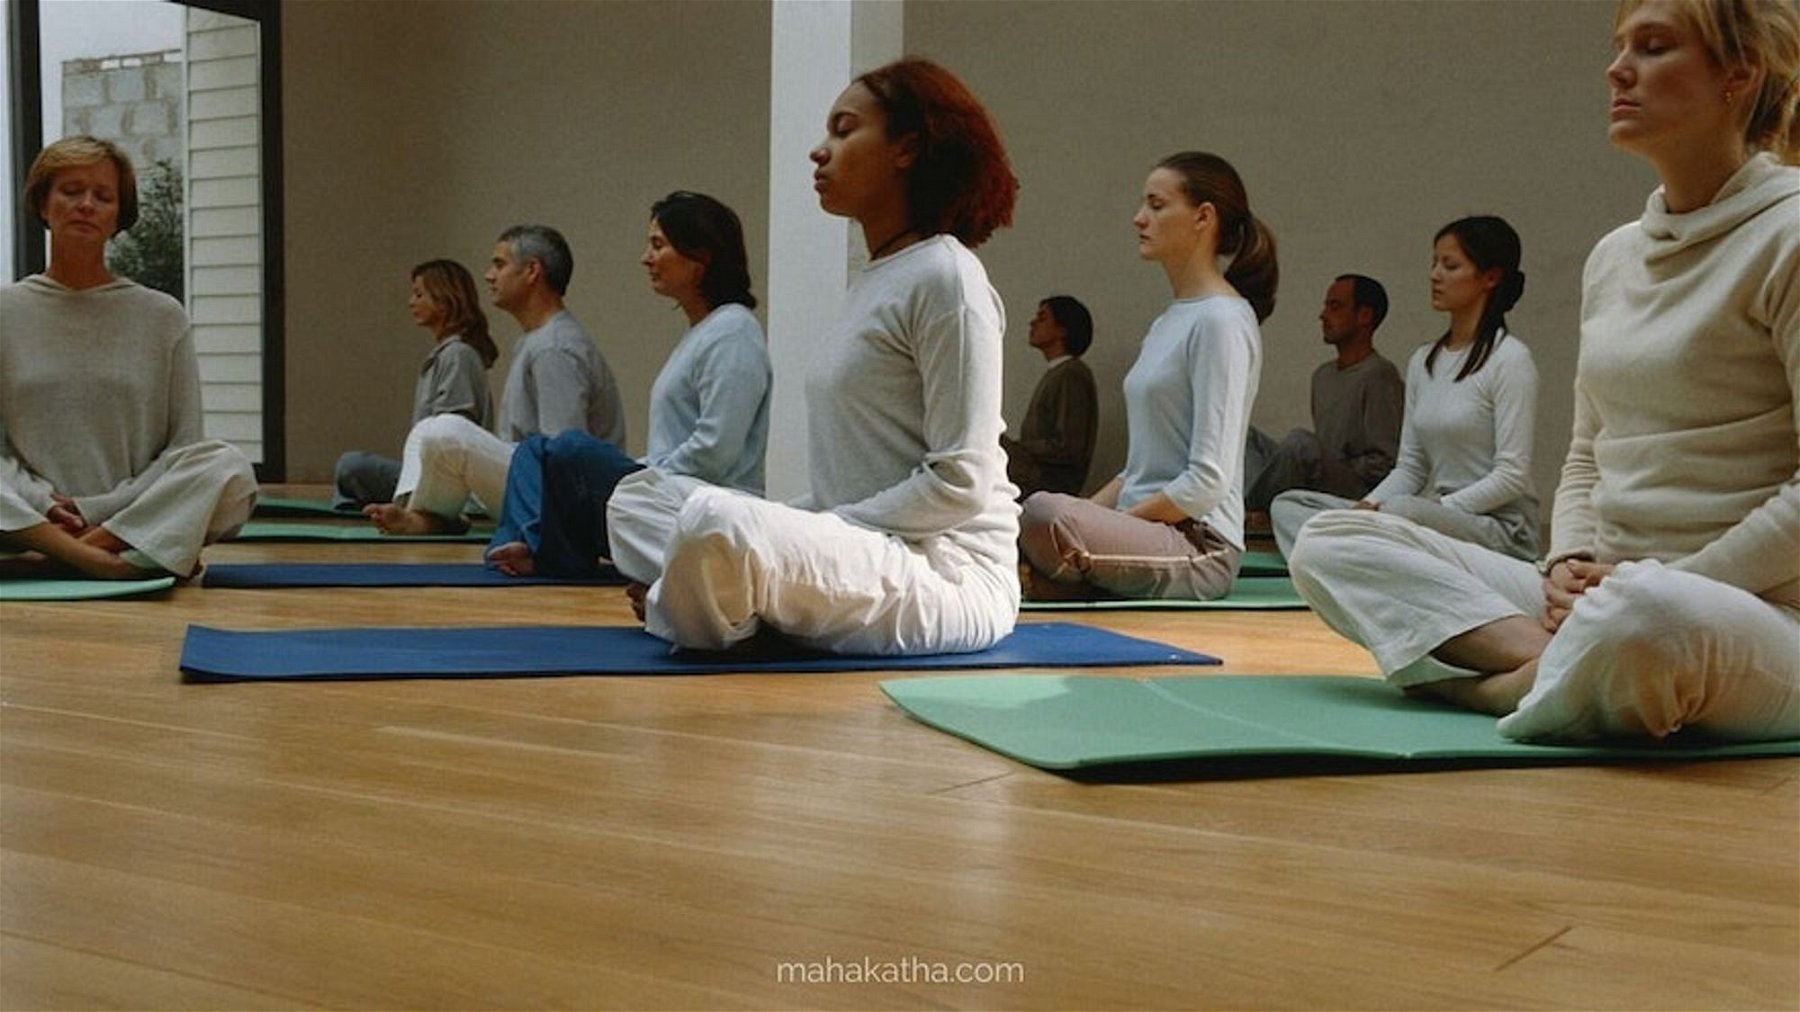 How to teach a meditation class